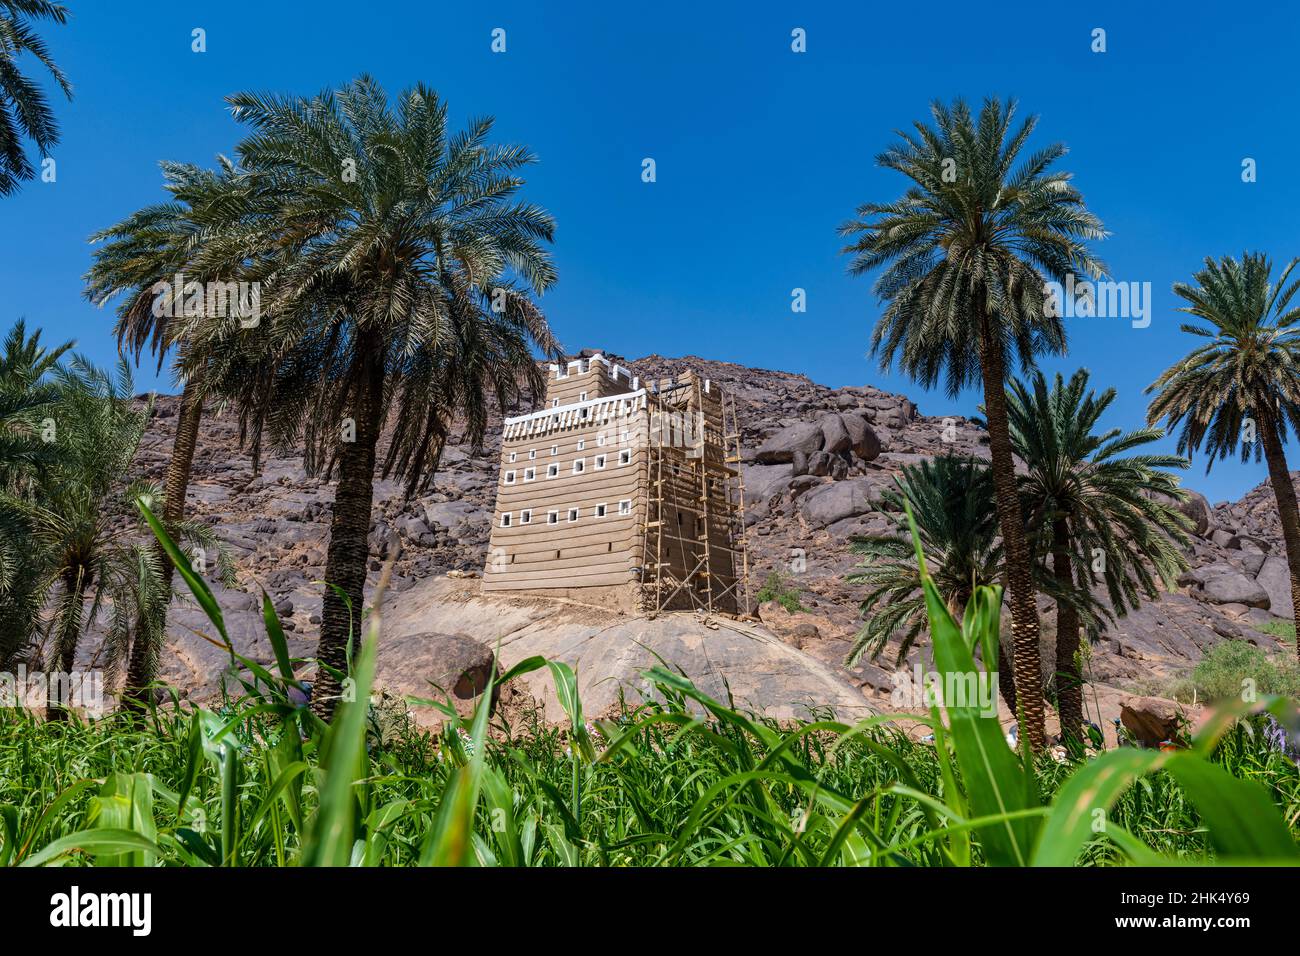 Ancienne maison fortifiée faite de boue, Najran, Royaume d'Arabie Saoudite, Moyen-Orient Banque D'Images